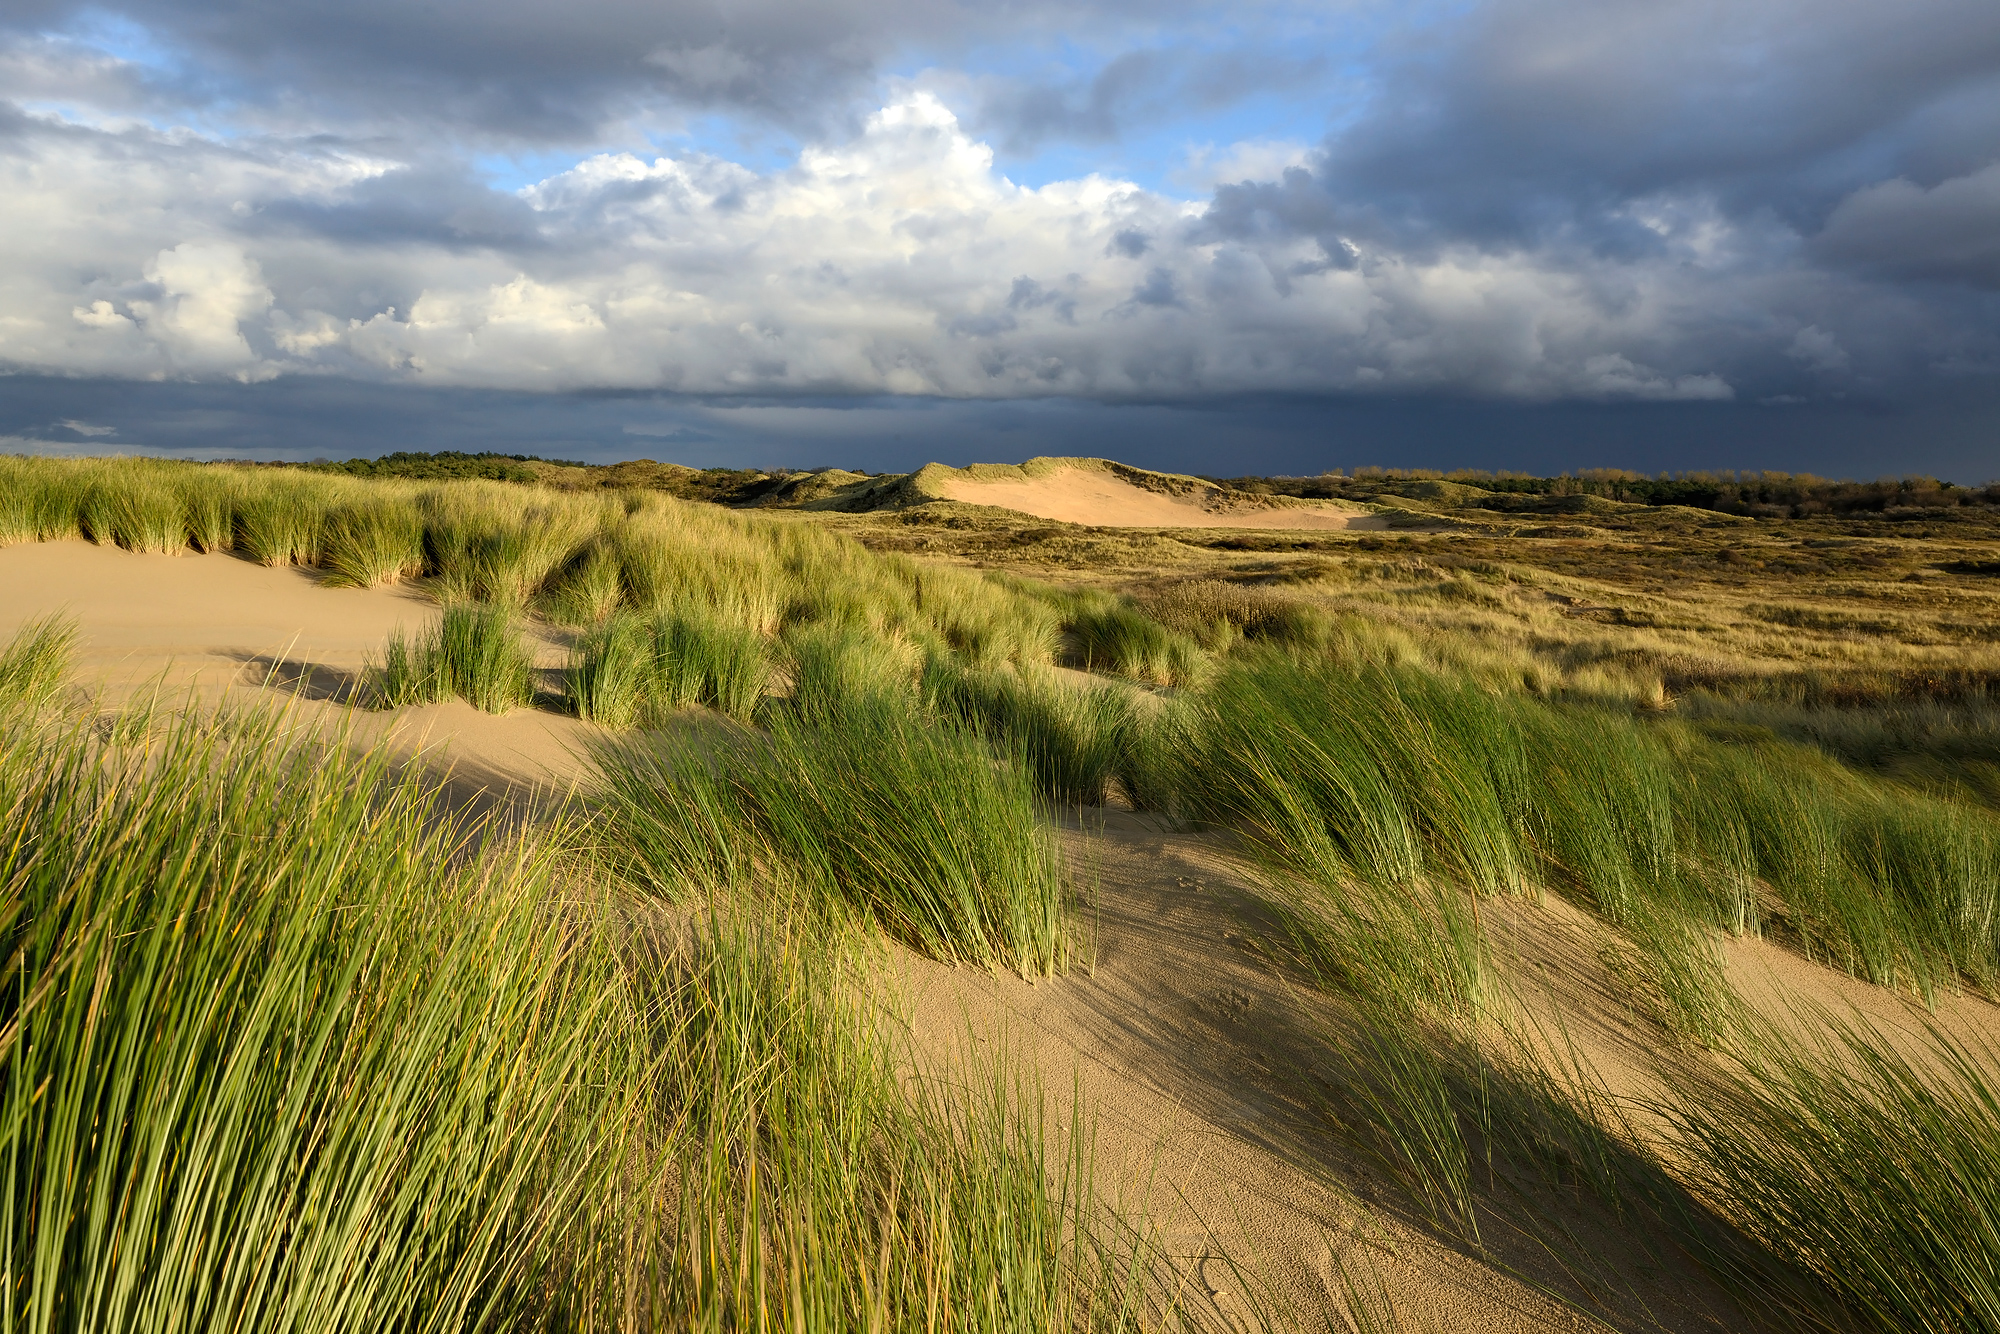 Warm strijklicht schijnt over het zand en helmgras van de duinen in het Noordhollands Duinreservaat bij Heemskerk